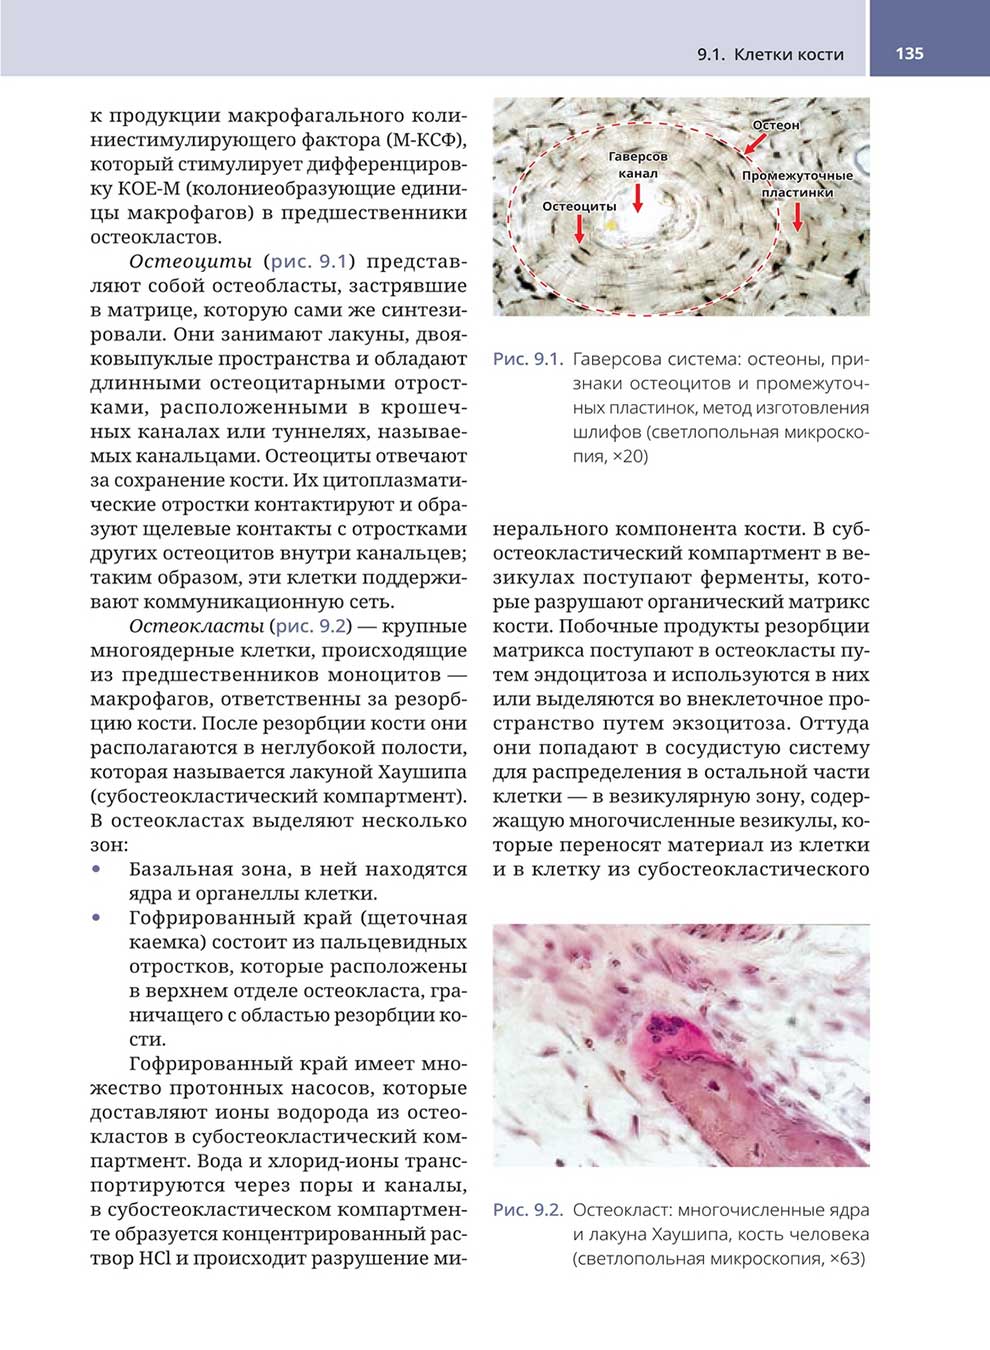 Рис. 9.1. Гаверсова система: остеоны, признаки остеоцитов и промежуточных пластинок, метод изготовления шлифов (светлопольная микроскопия, x20)